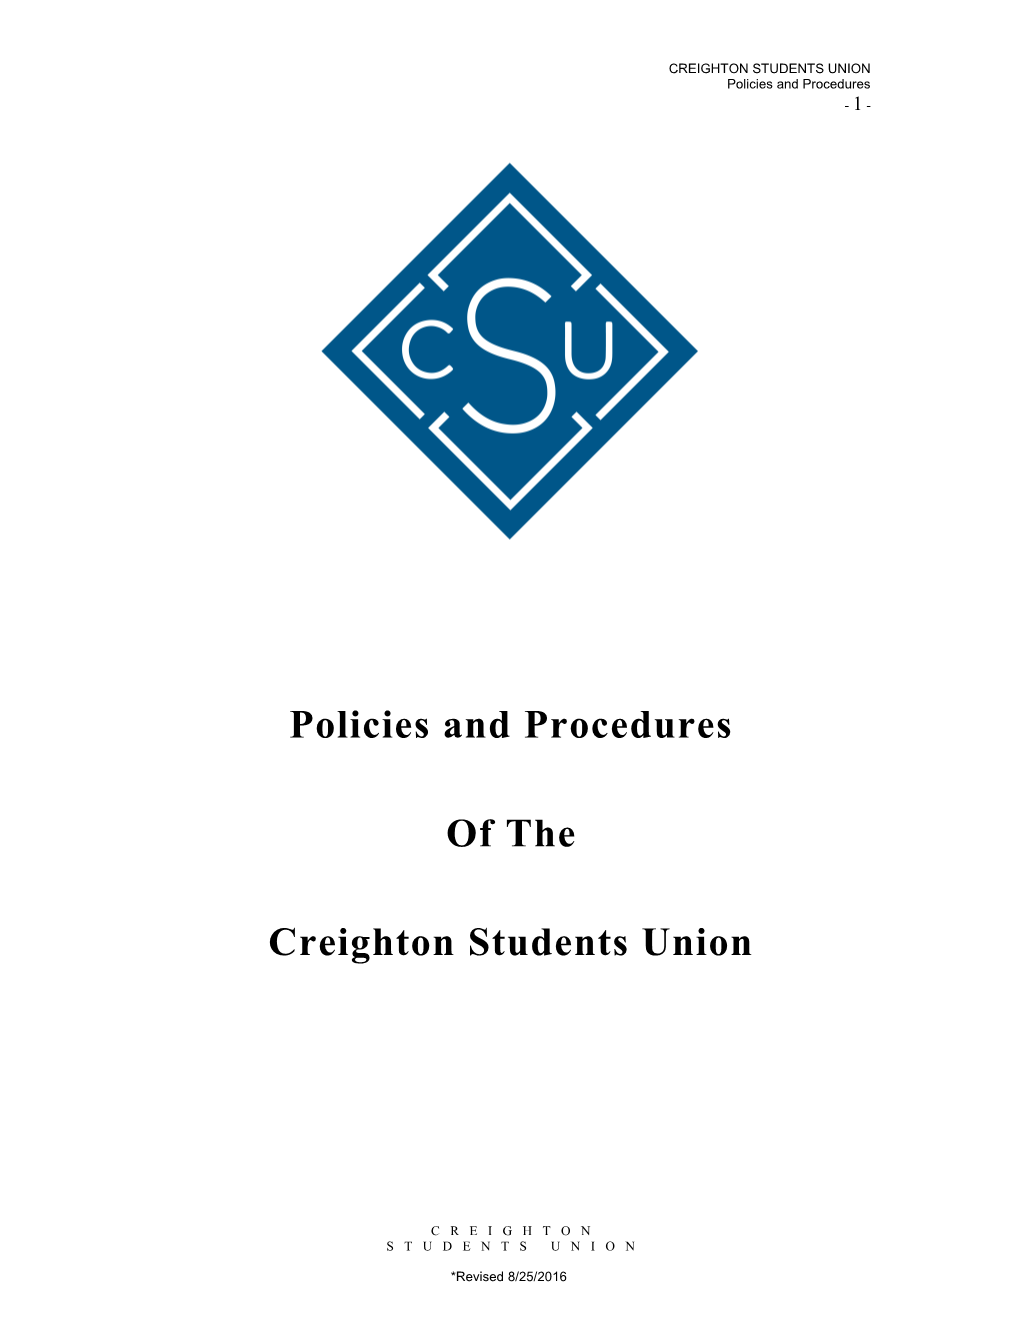 Creighton Students Union